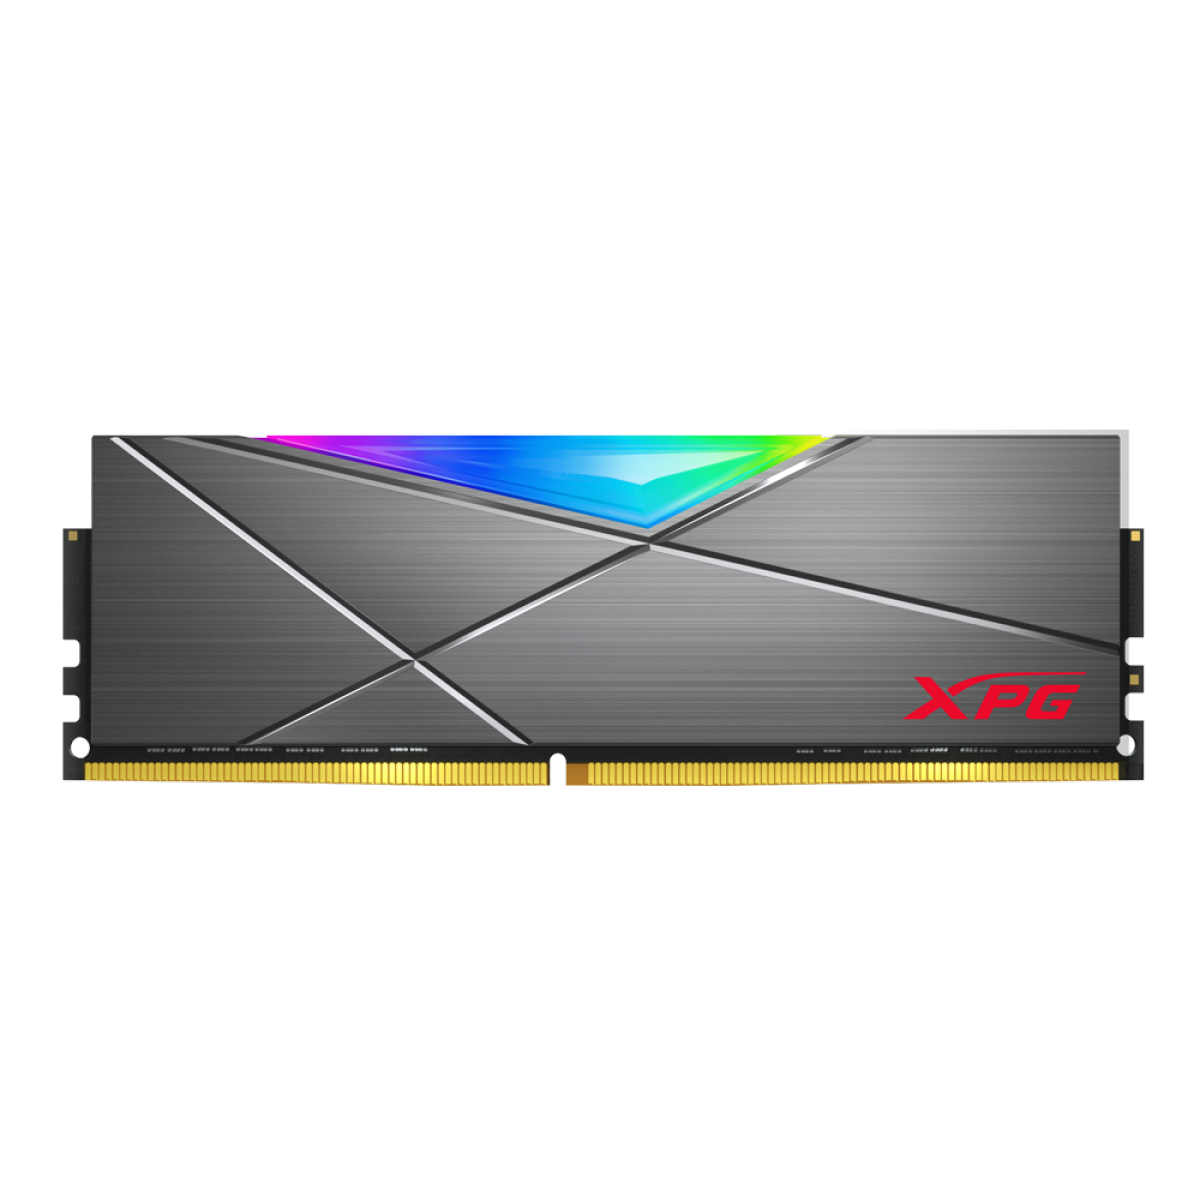 Memória DDR4 XPG Spectrix D50, 32GB (2x16GB), 3200Mhz, CL16, RGB, Gray, AX4U320016G16A-DT50